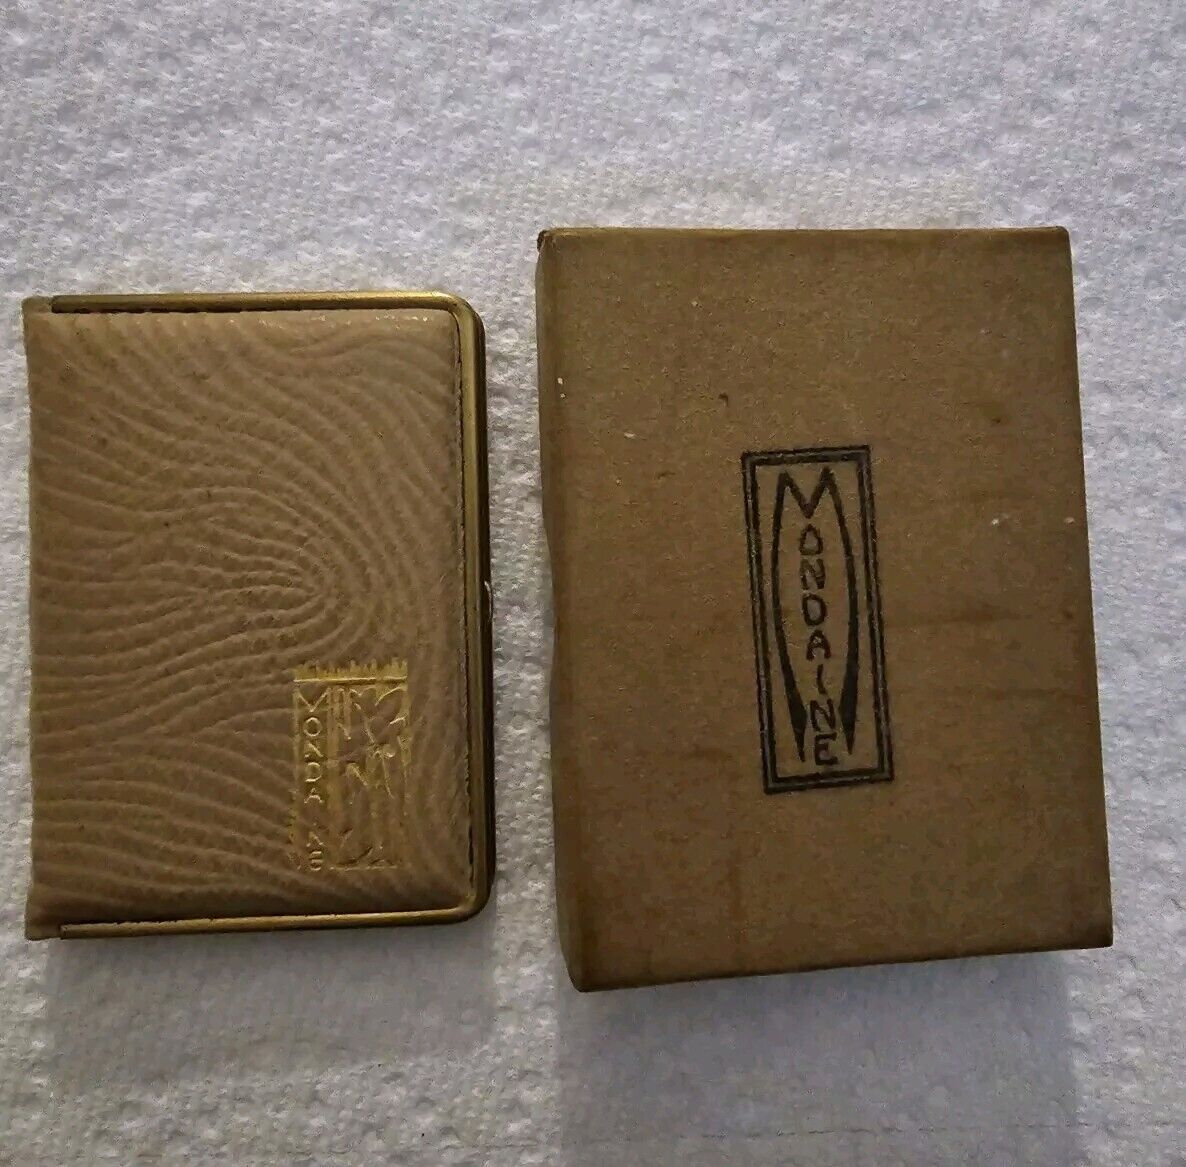 Vintage Mondaine Art Deco Leather Miniaudiere Powder Rouge Case Compact UNUSED 